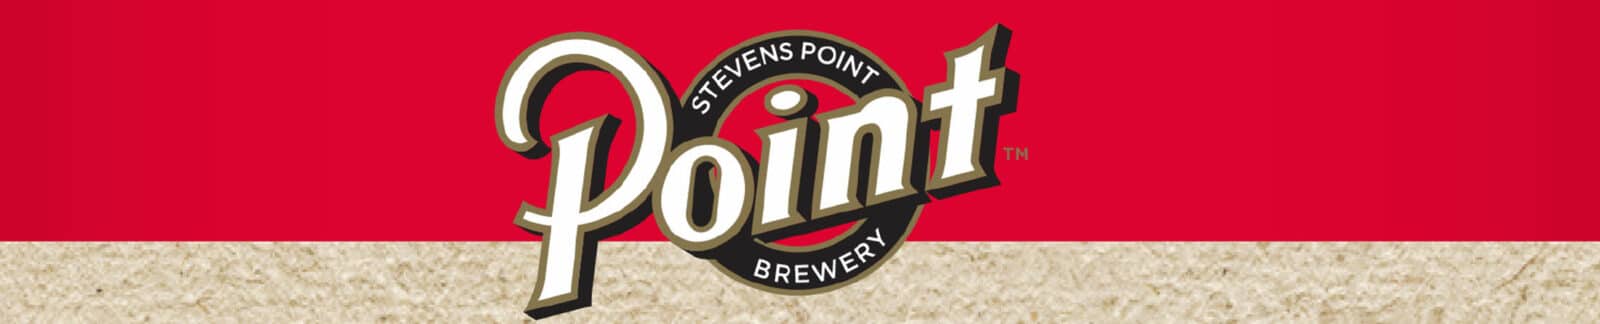 Stevens Point Brewery header